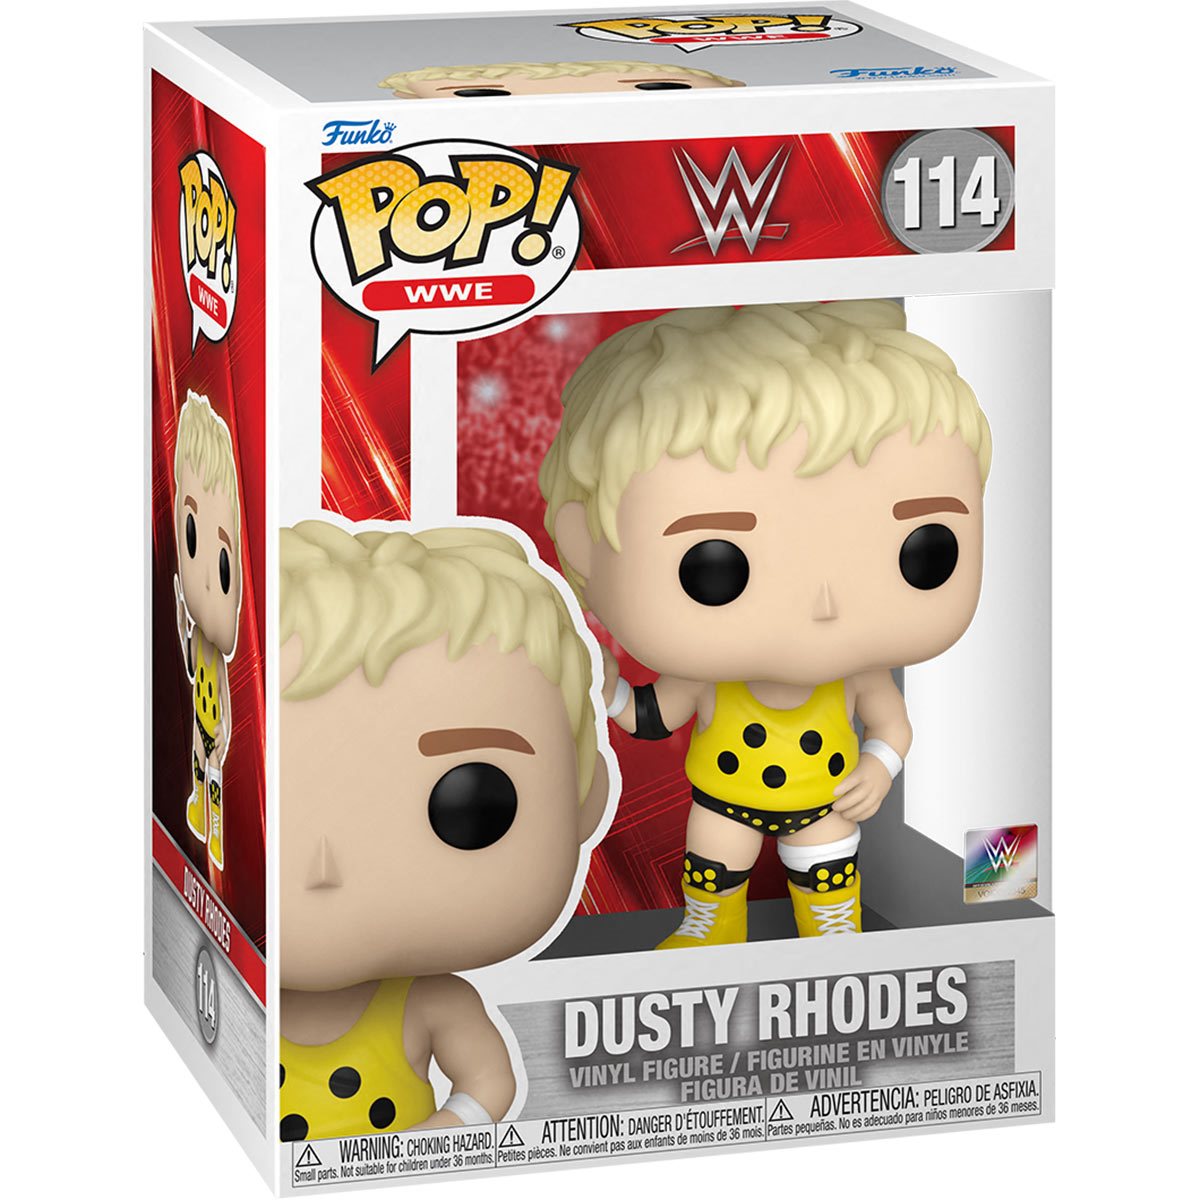 WWE: Dusty Rhodes Pop! Vinyl Figure (114)